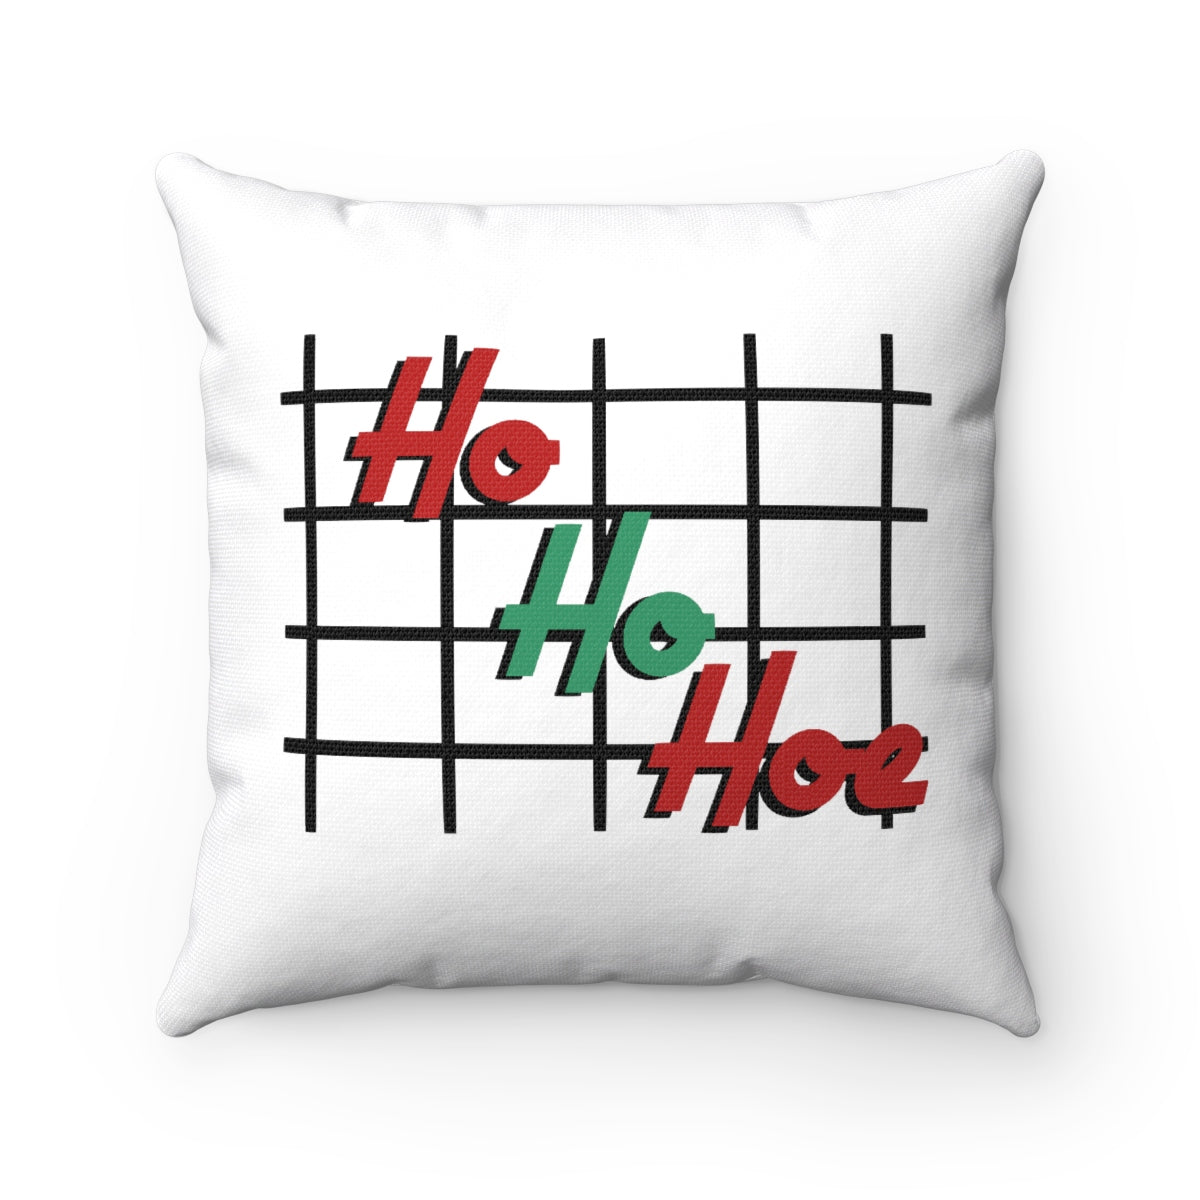 ho ho hoe Pillow Case - MCE Creations